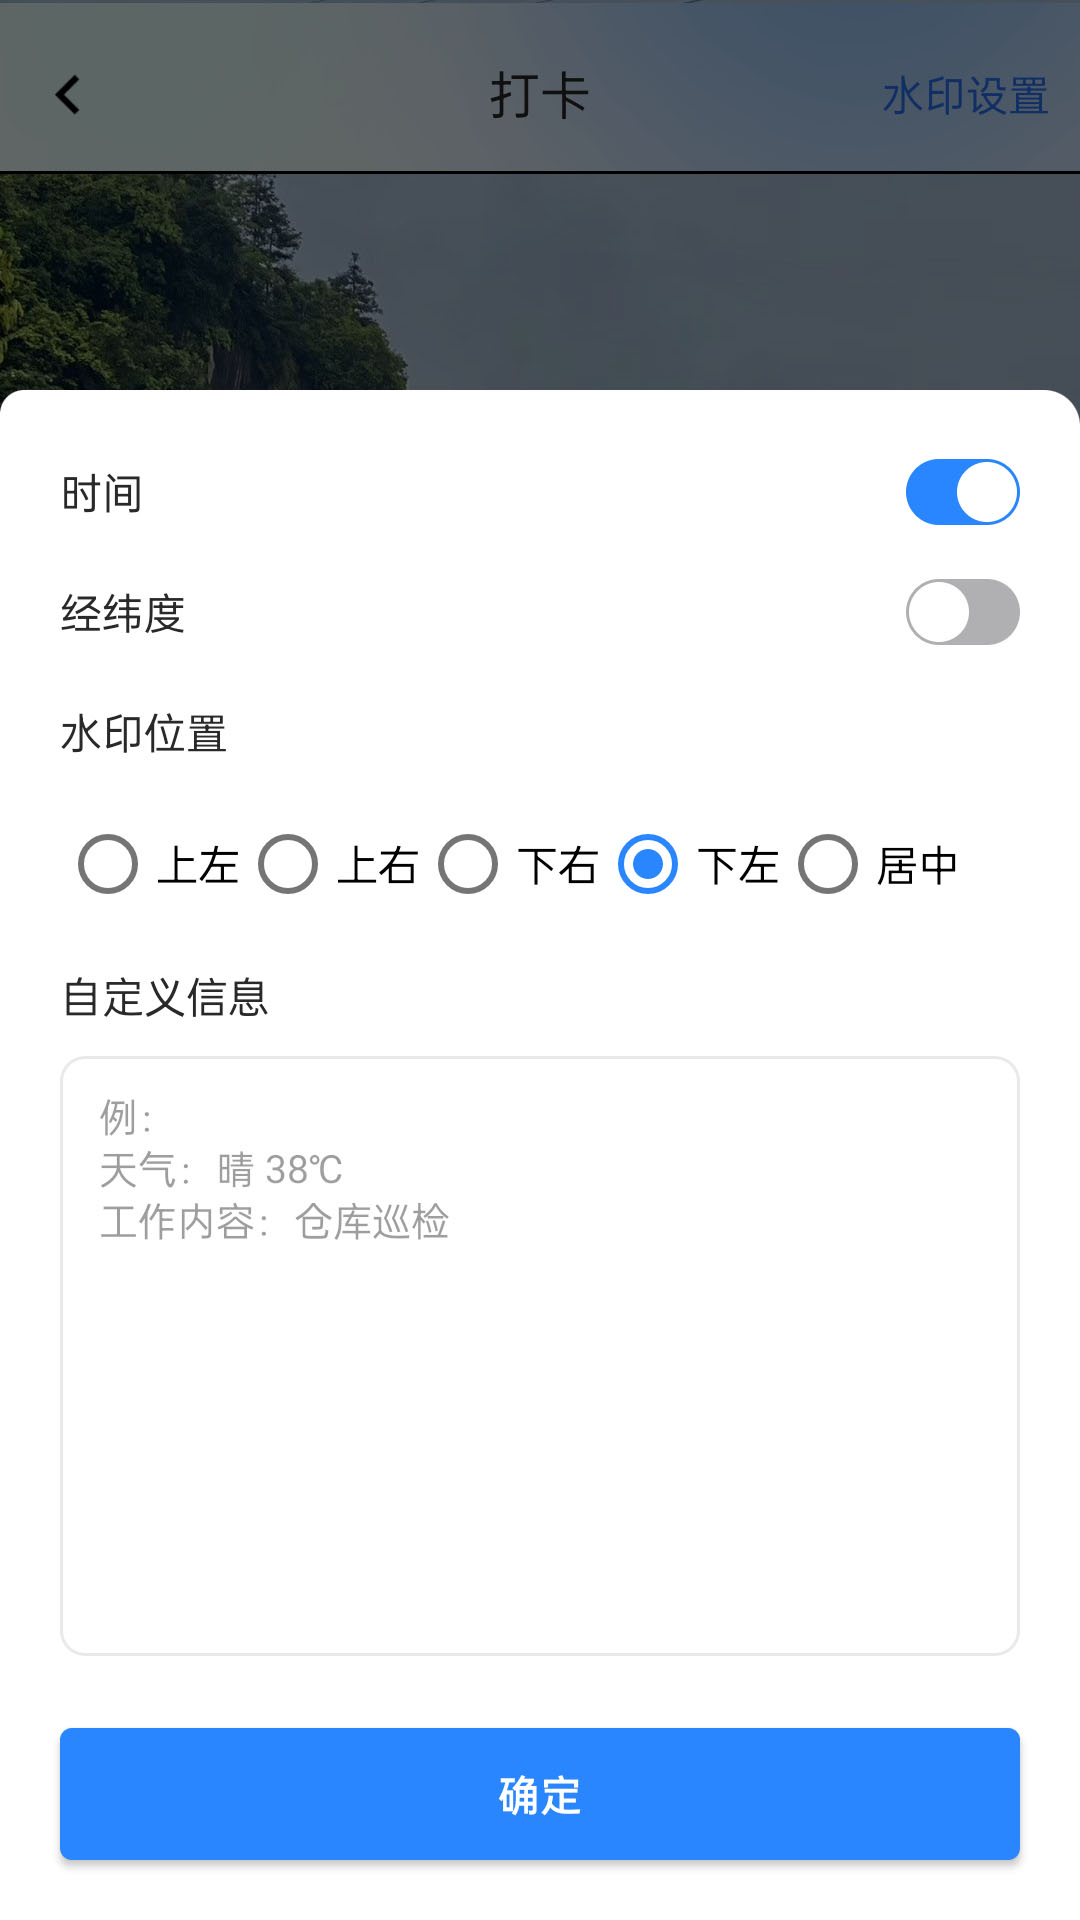 贝贝外勤打卡app下载-贝贝外勤打卡v1.0.1 安卓版